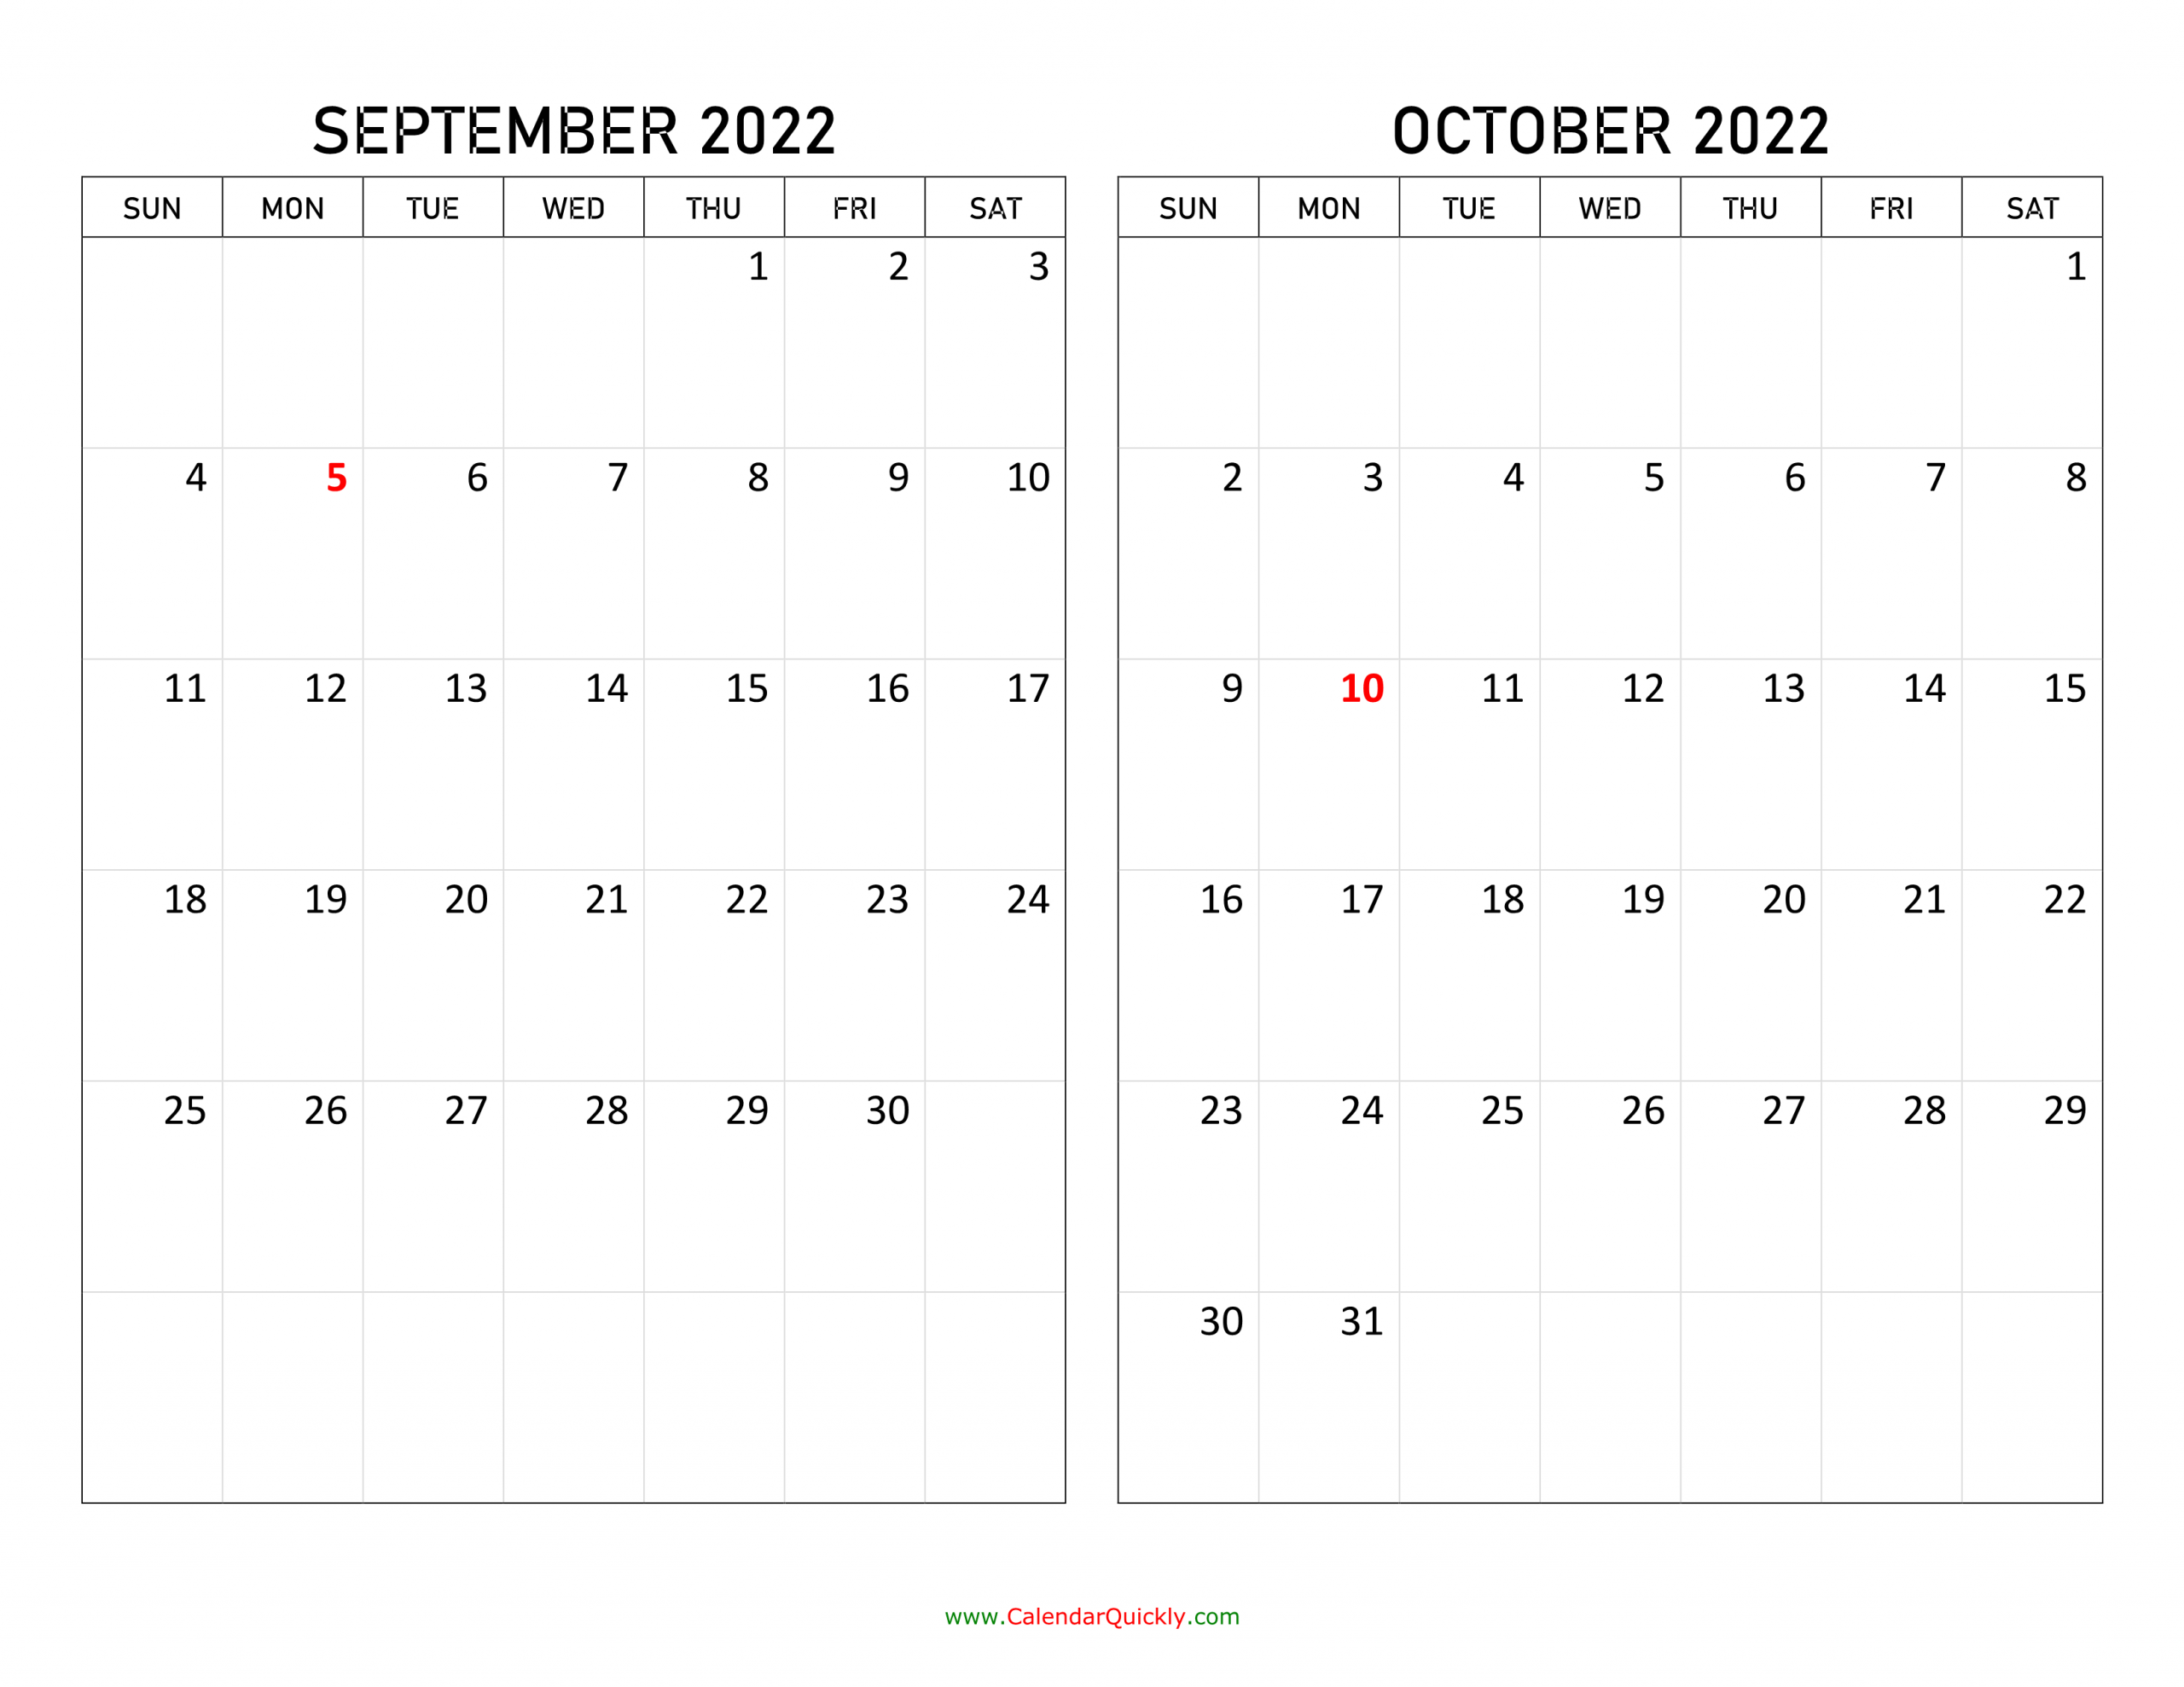 September And October 2022 Calendar | Calendar Quickly September And October Calendar